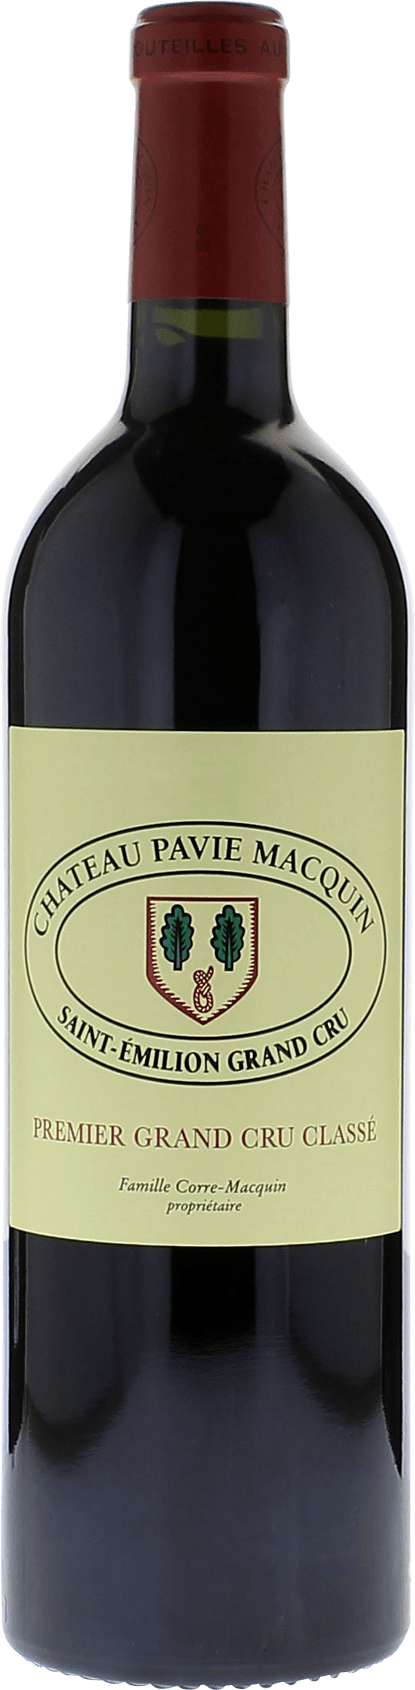 Pavie macquin 1992 1er Grand cru B class Saint-Emilion, Bordeaux rouge